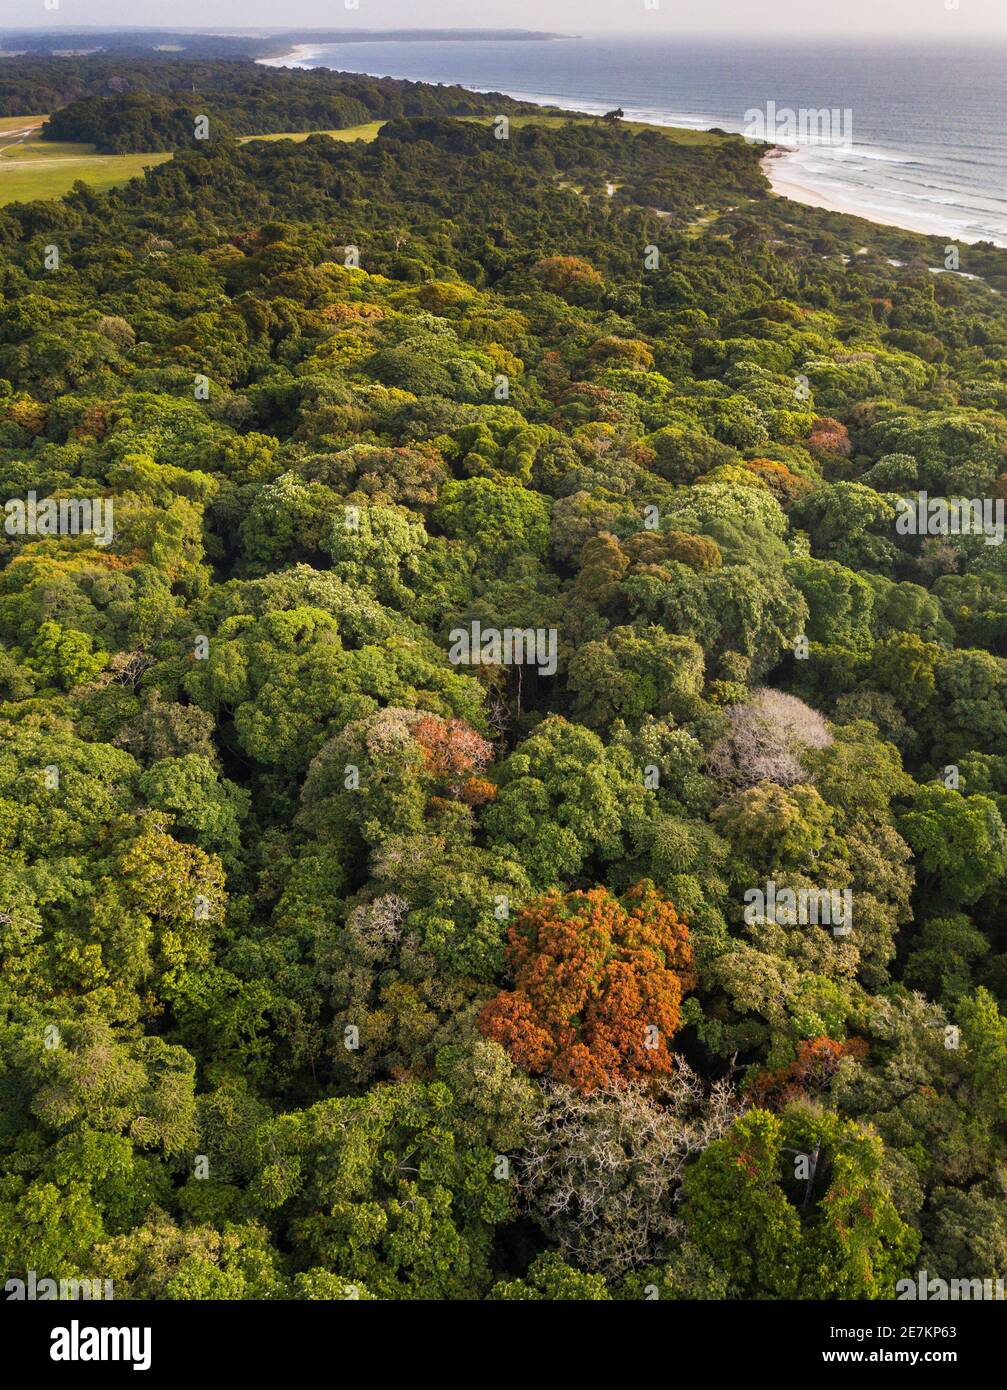 Foresta pluviale lungo la costa atlantica, vicino a Omboue, Gabon, Africa centrale. Foto Stock